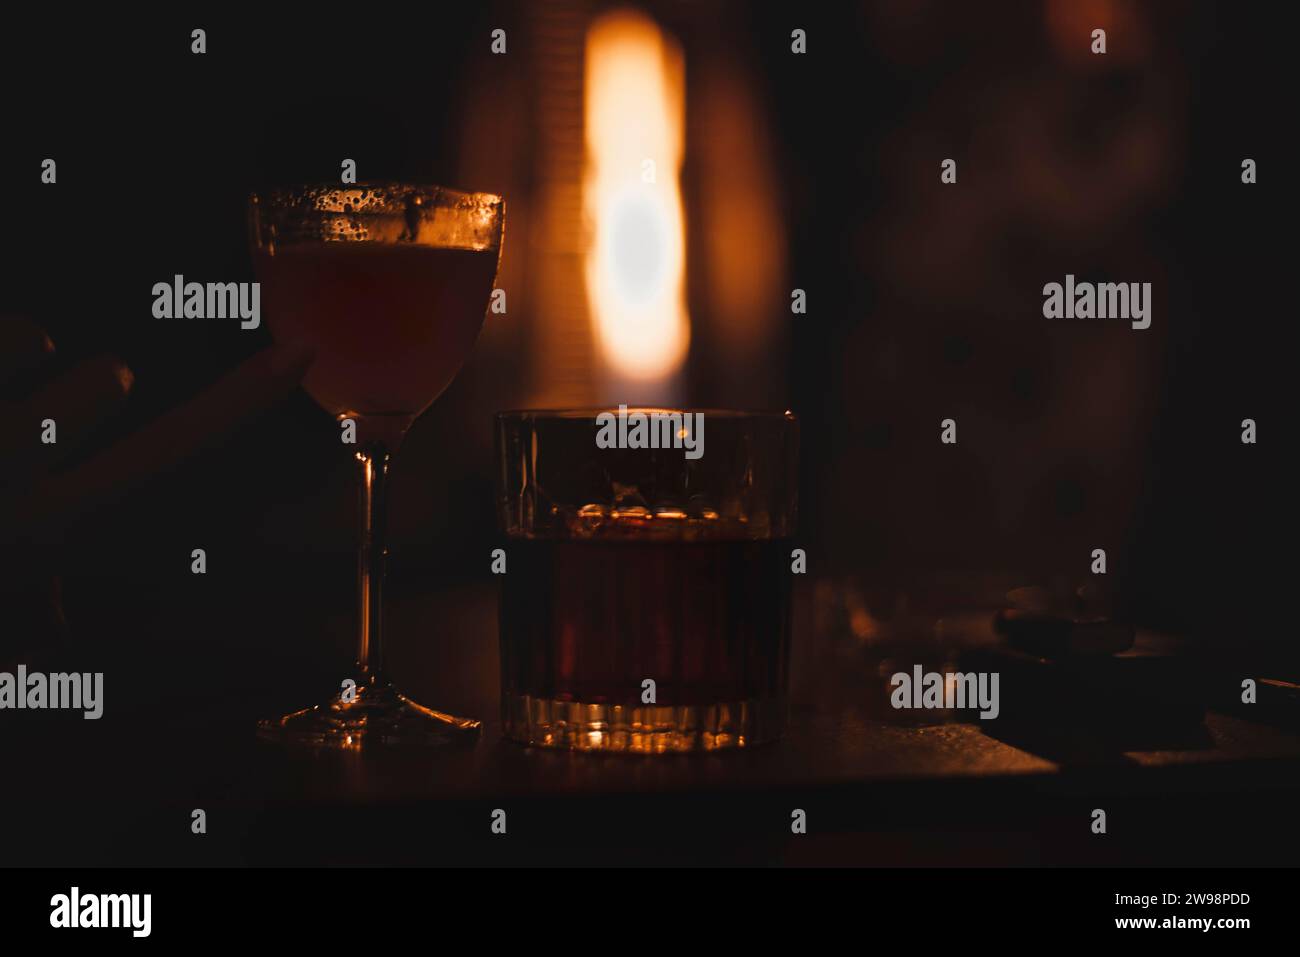 Immagine di un bicchiere con un cocktail in un bar notturno sullo sfondo di un riscaldatore ardente. Concetto di ristorante Foto Stock